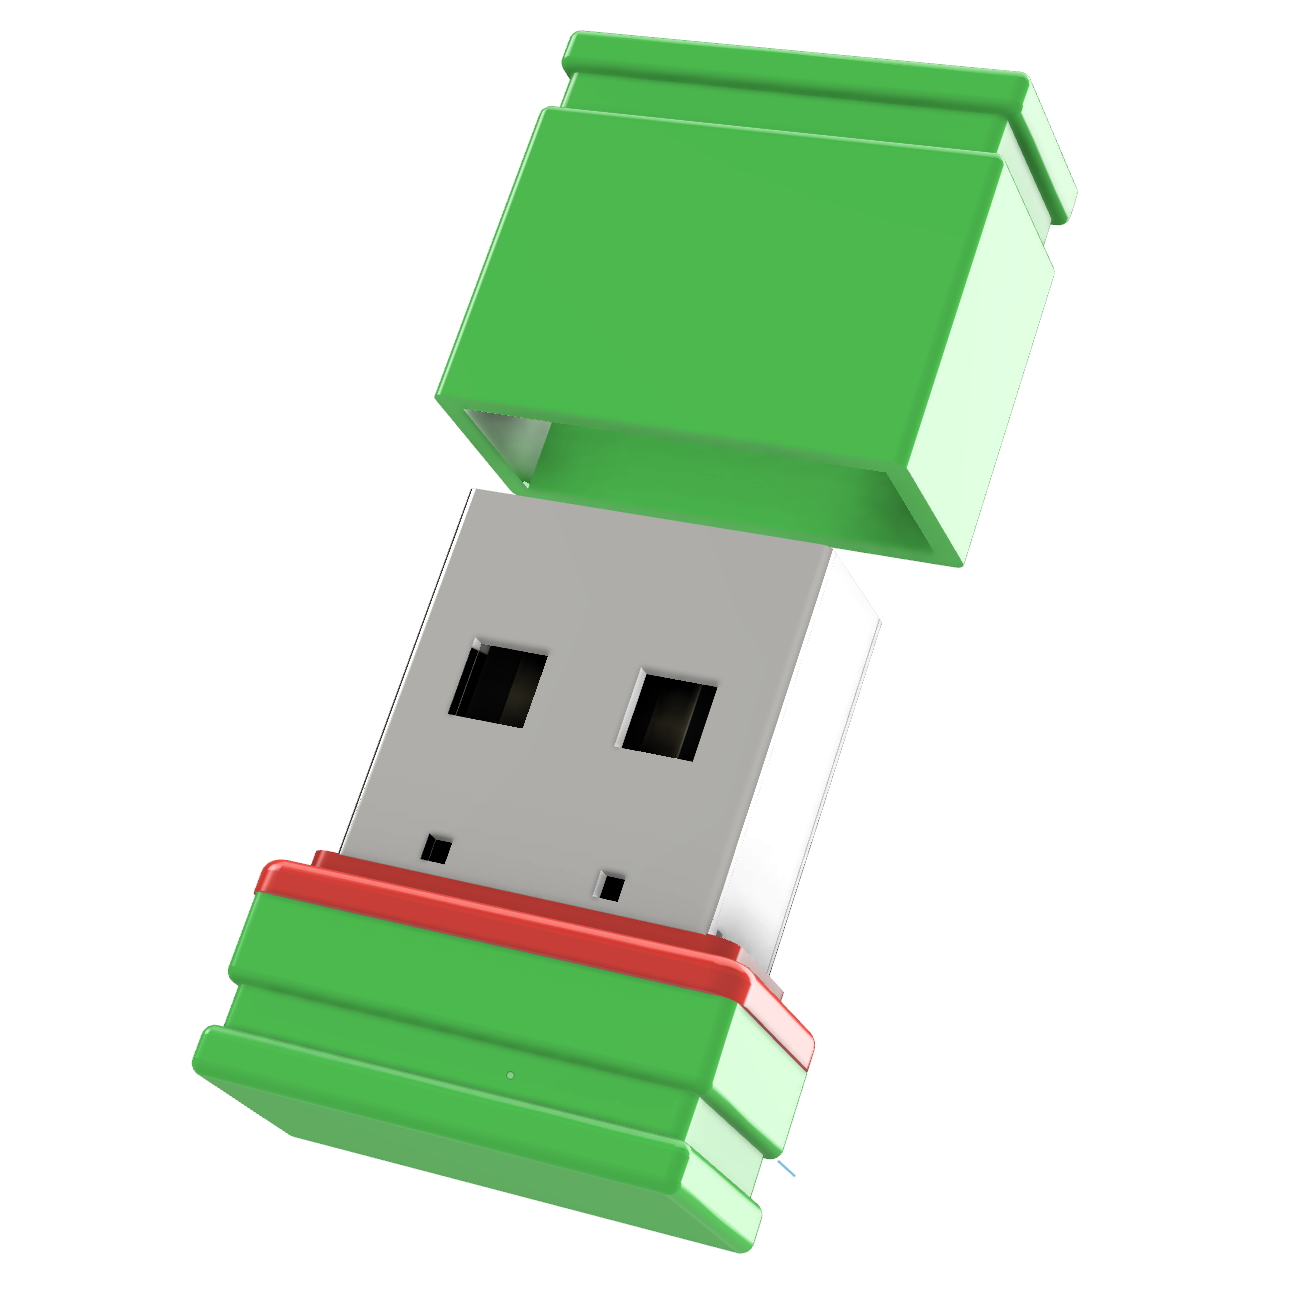 16 GERMANY USB GB) P1 ®ULTRA Mini (Grün/Rot, USB-Stick